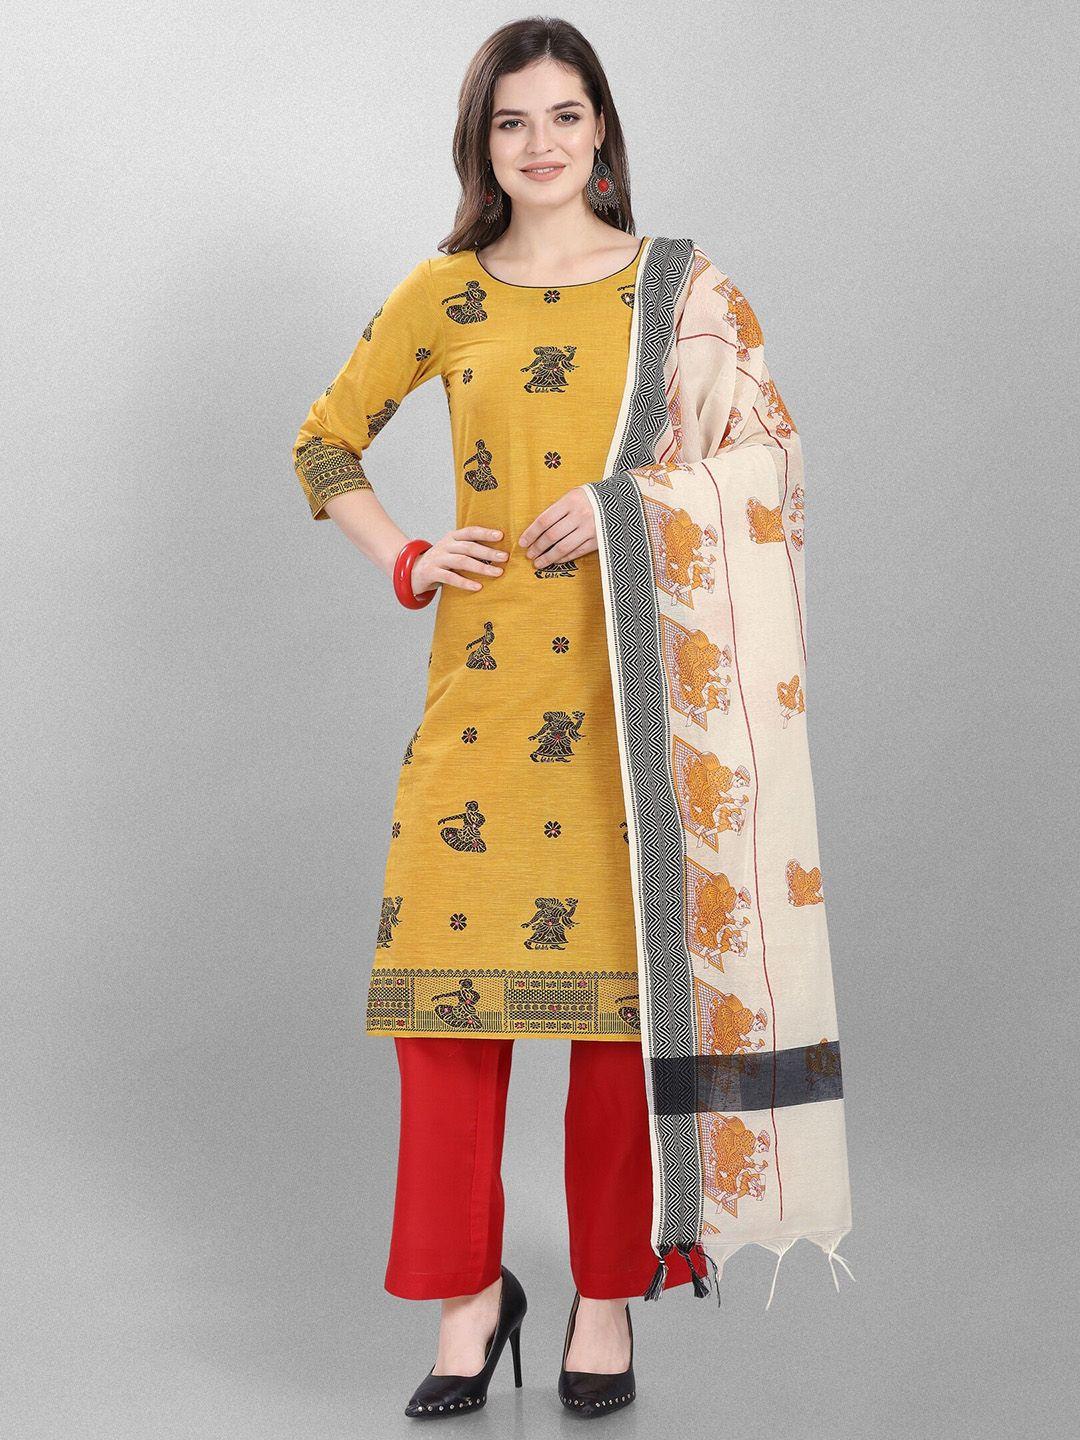 jevi prints ethnic motifs woven design pure cotton unstitched dress material